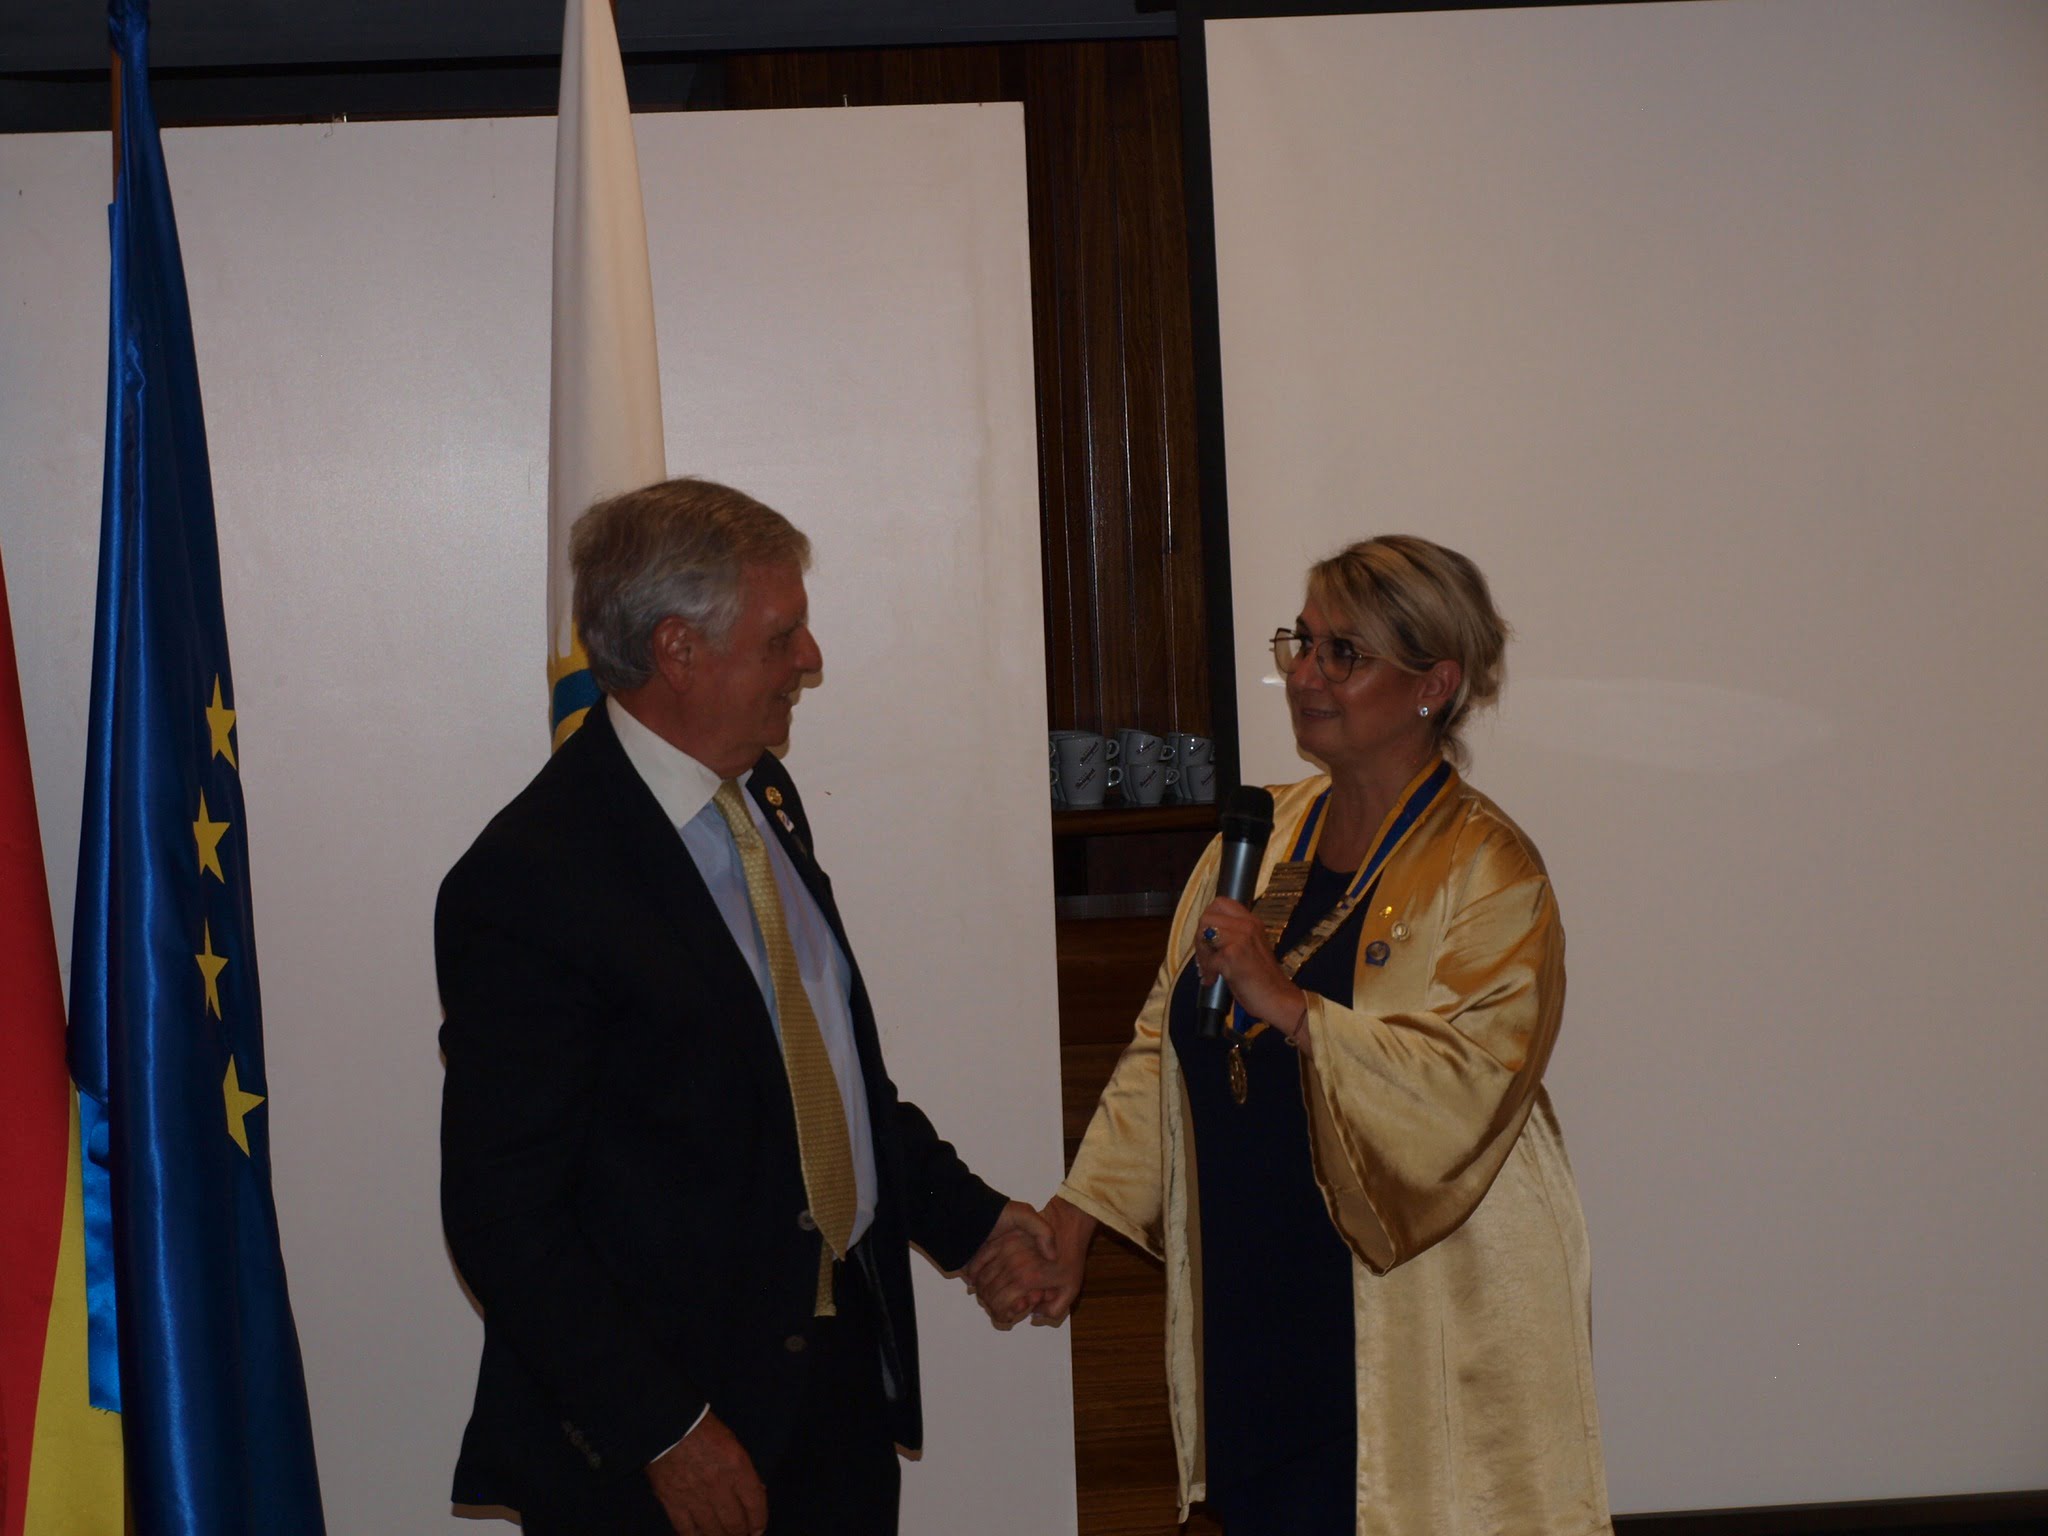 Intercambio de collares en el Rotary Club. Andrea Salerno nueva presidenta